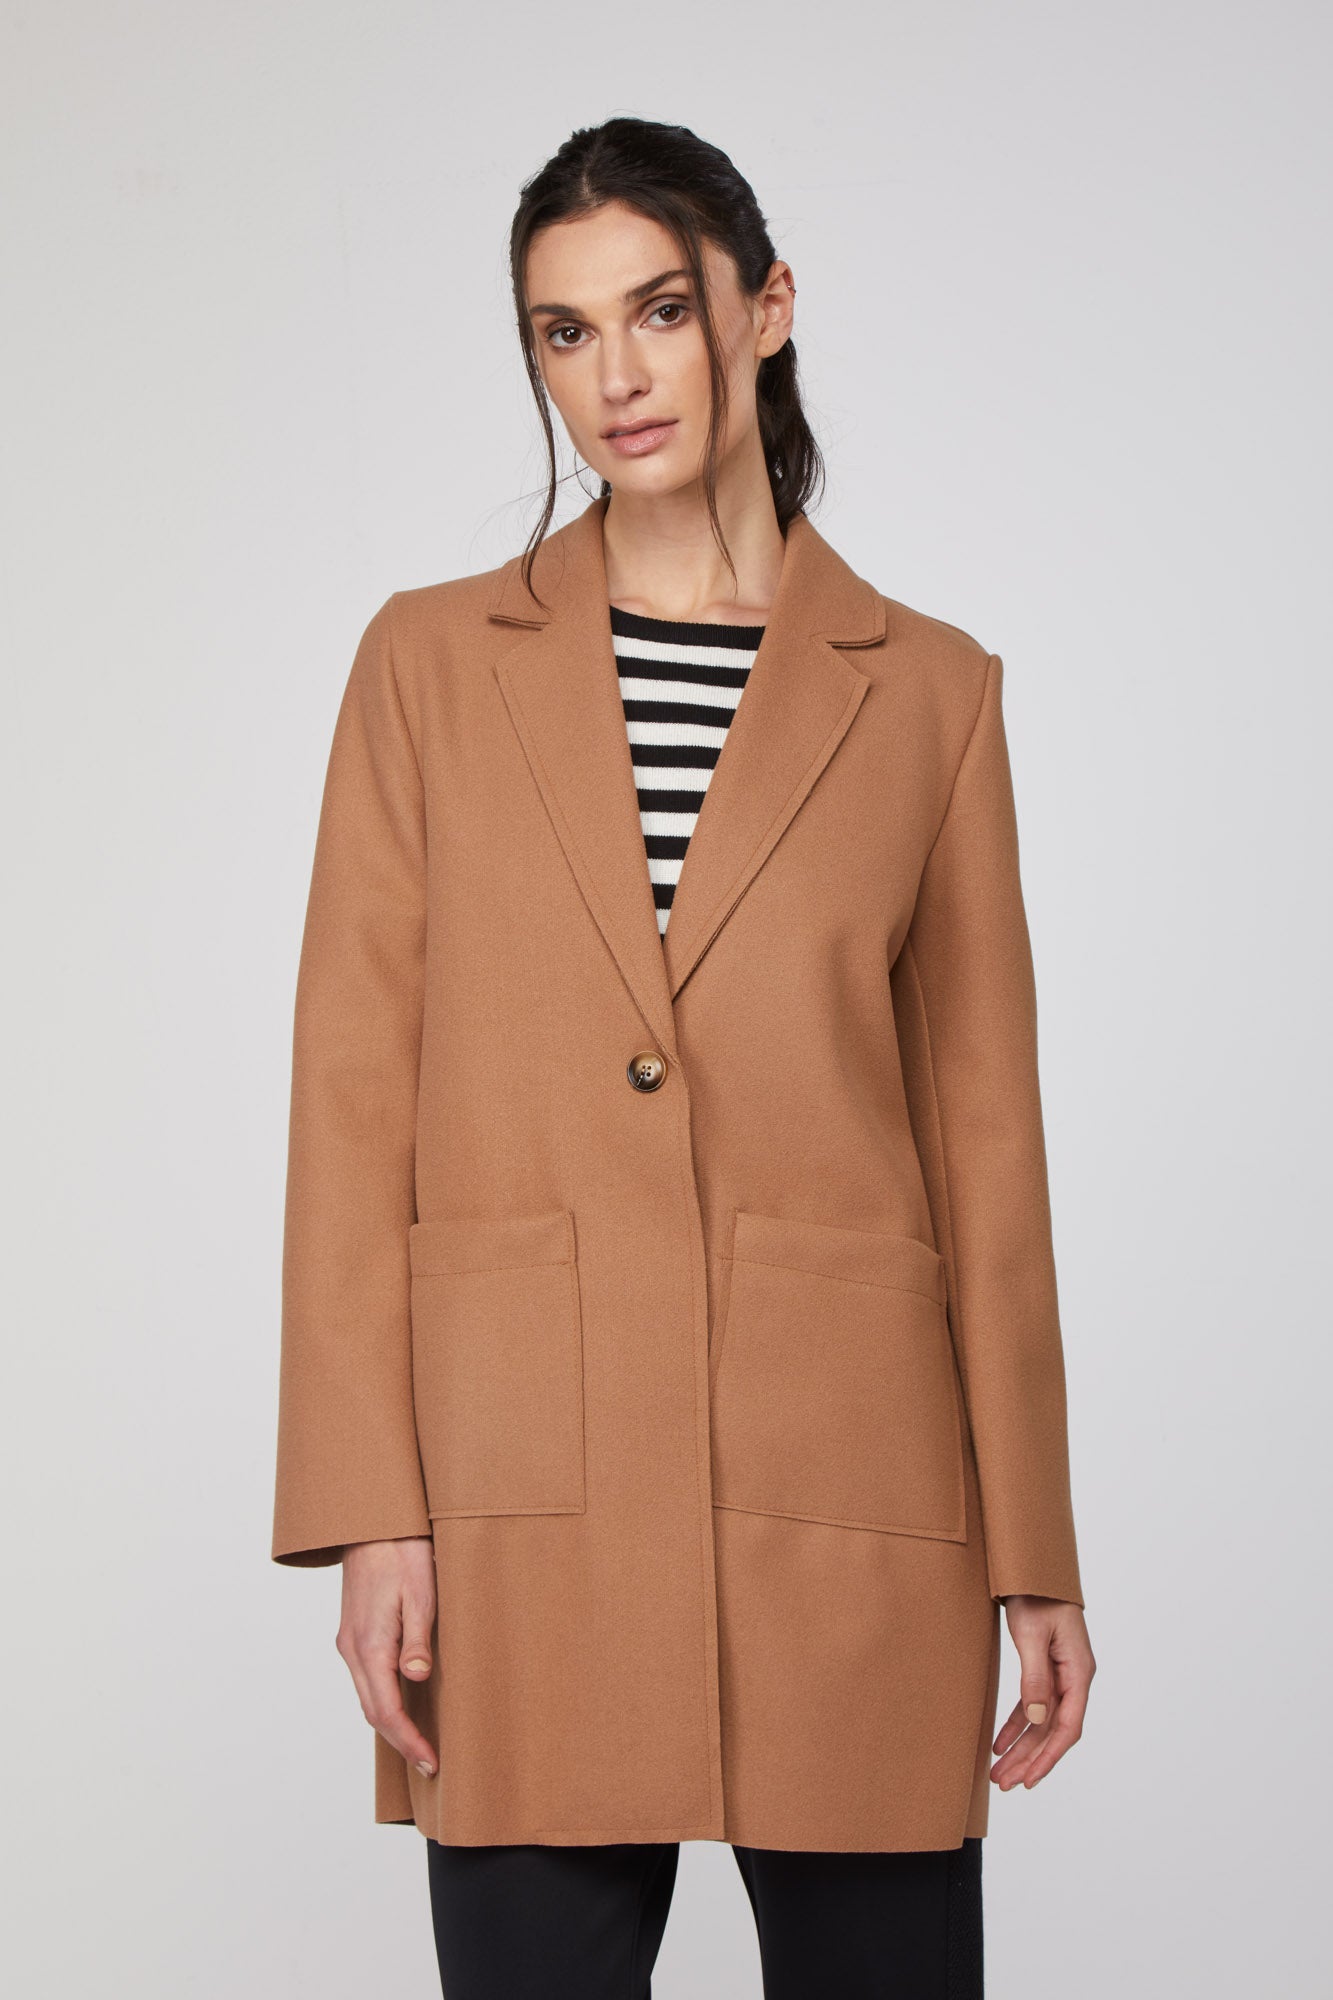 MANGANO "London" coat